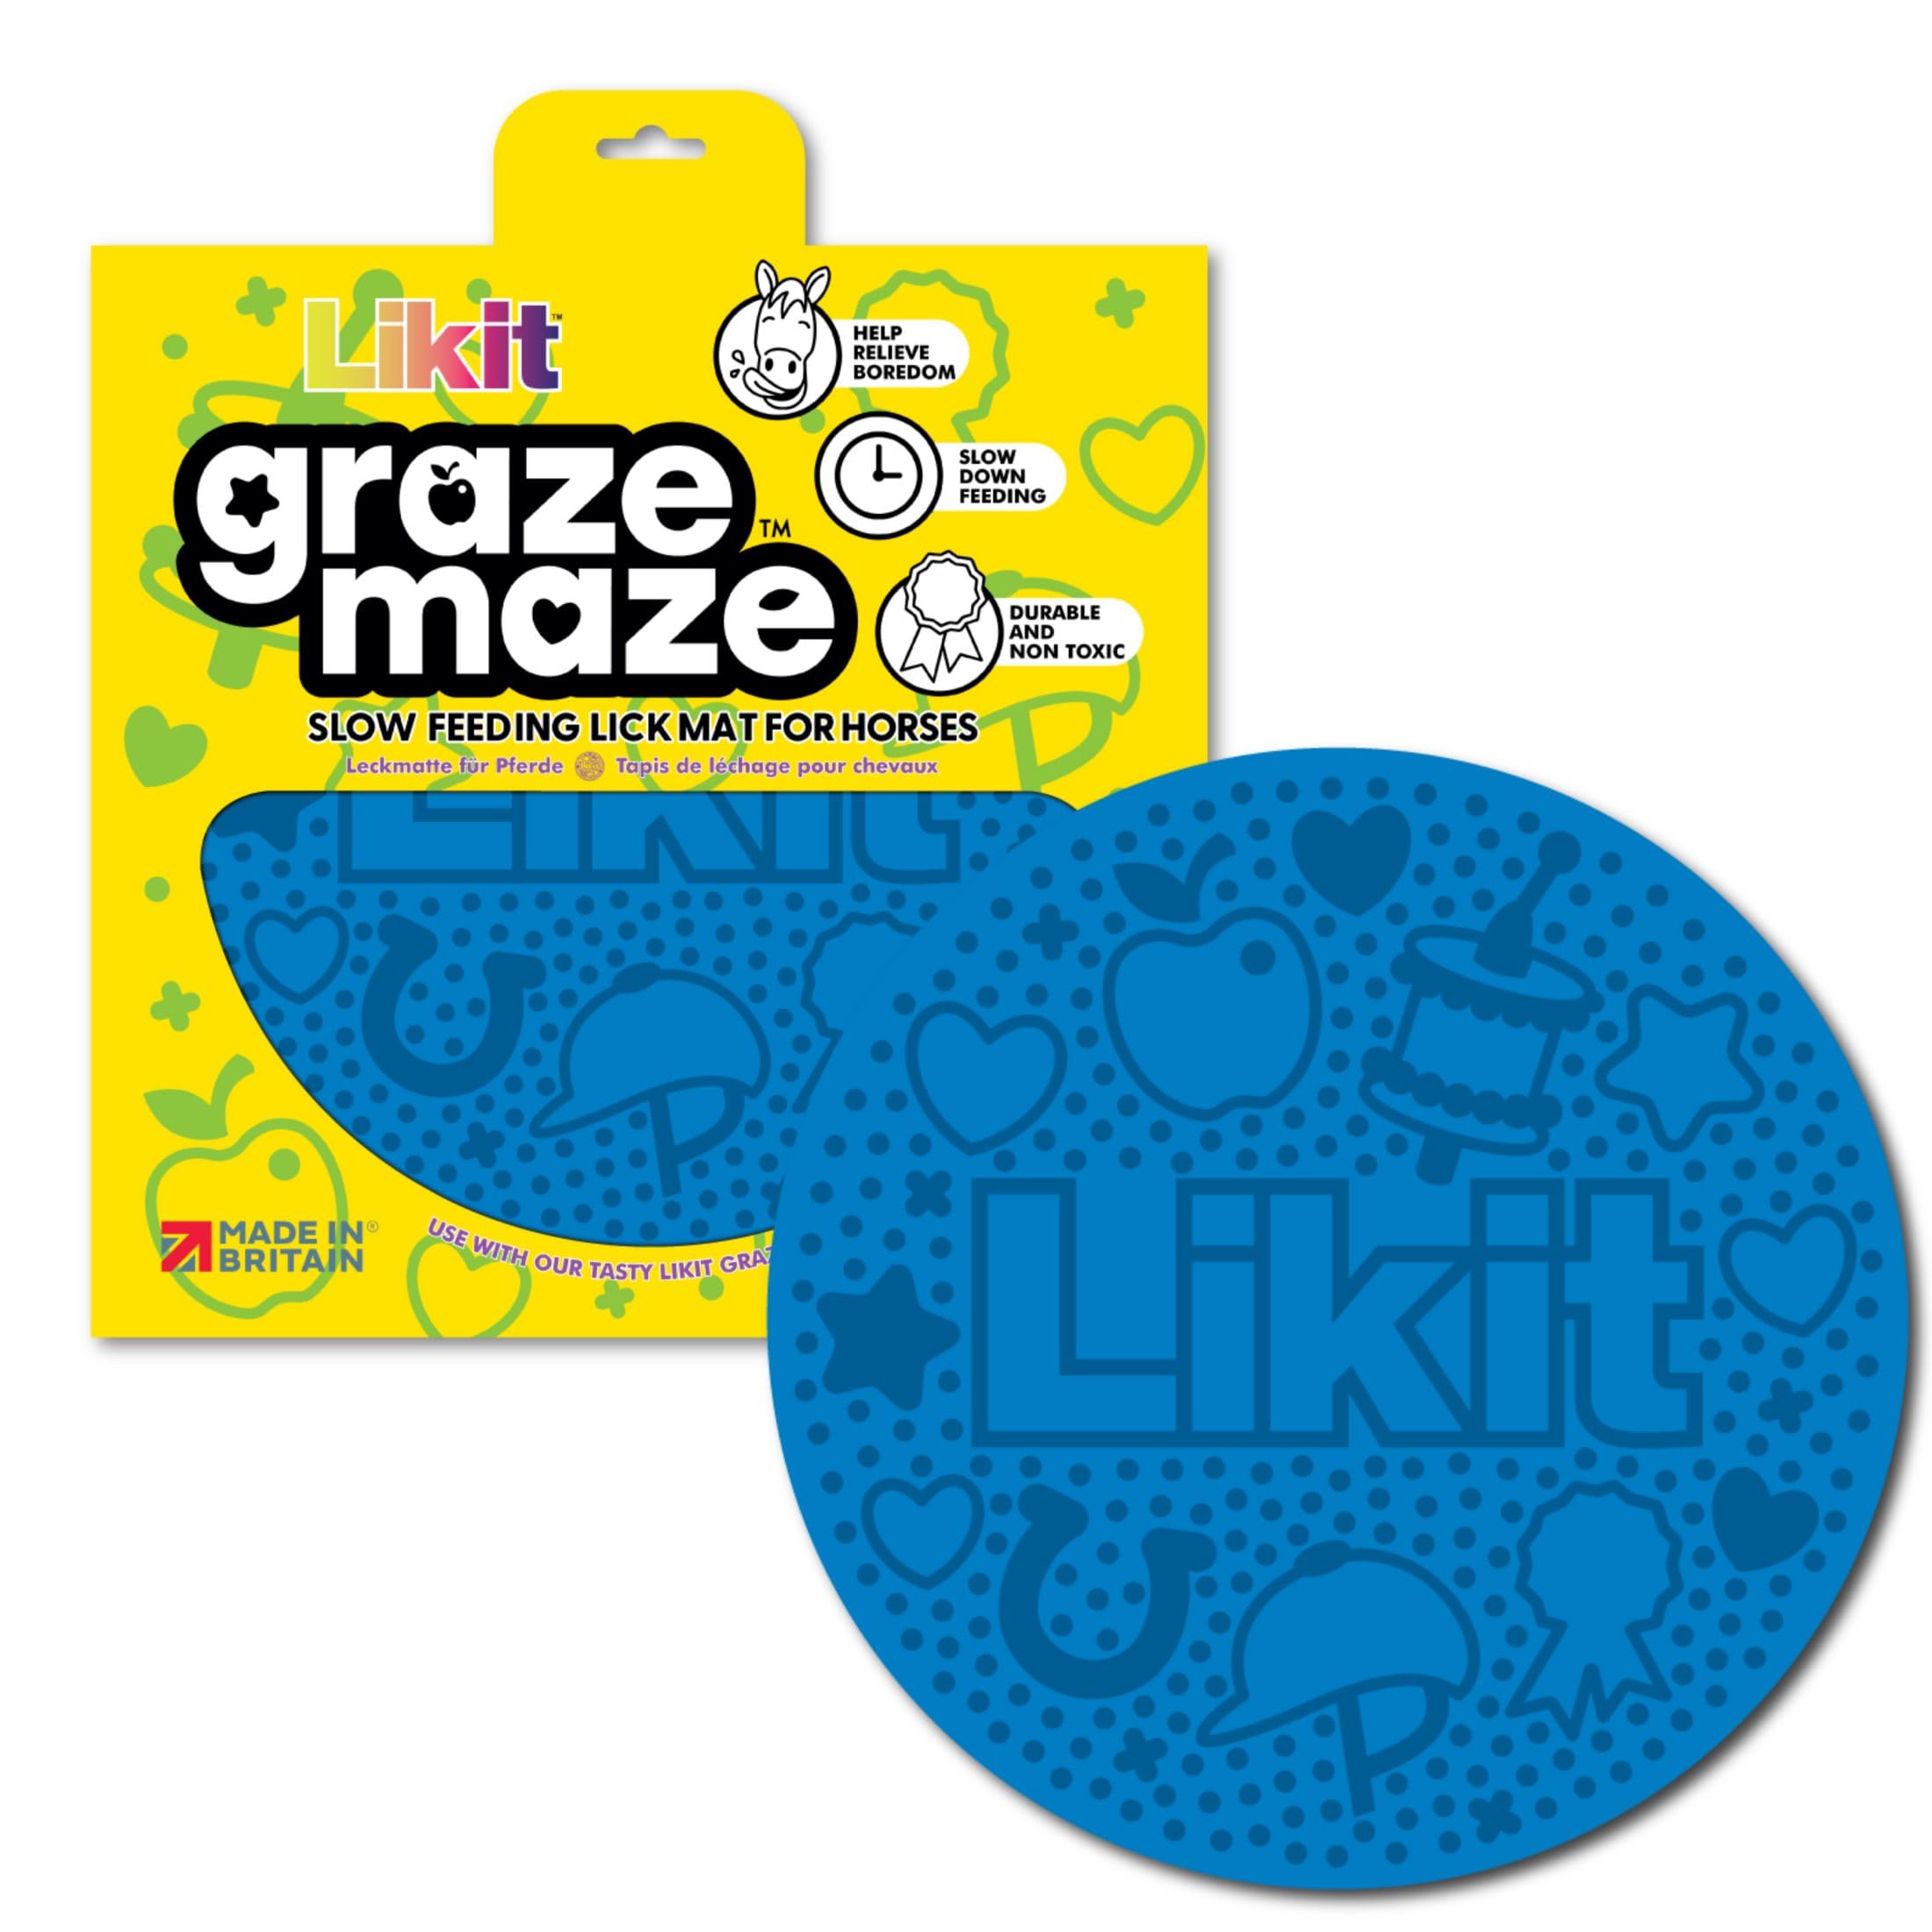 Likit Graze Labyrinth Pferdeleckmatte | Verwendung mit leckerer Likit Graze Paste | Hilft Langeweile zu lindern und langsames Füttern (blau)